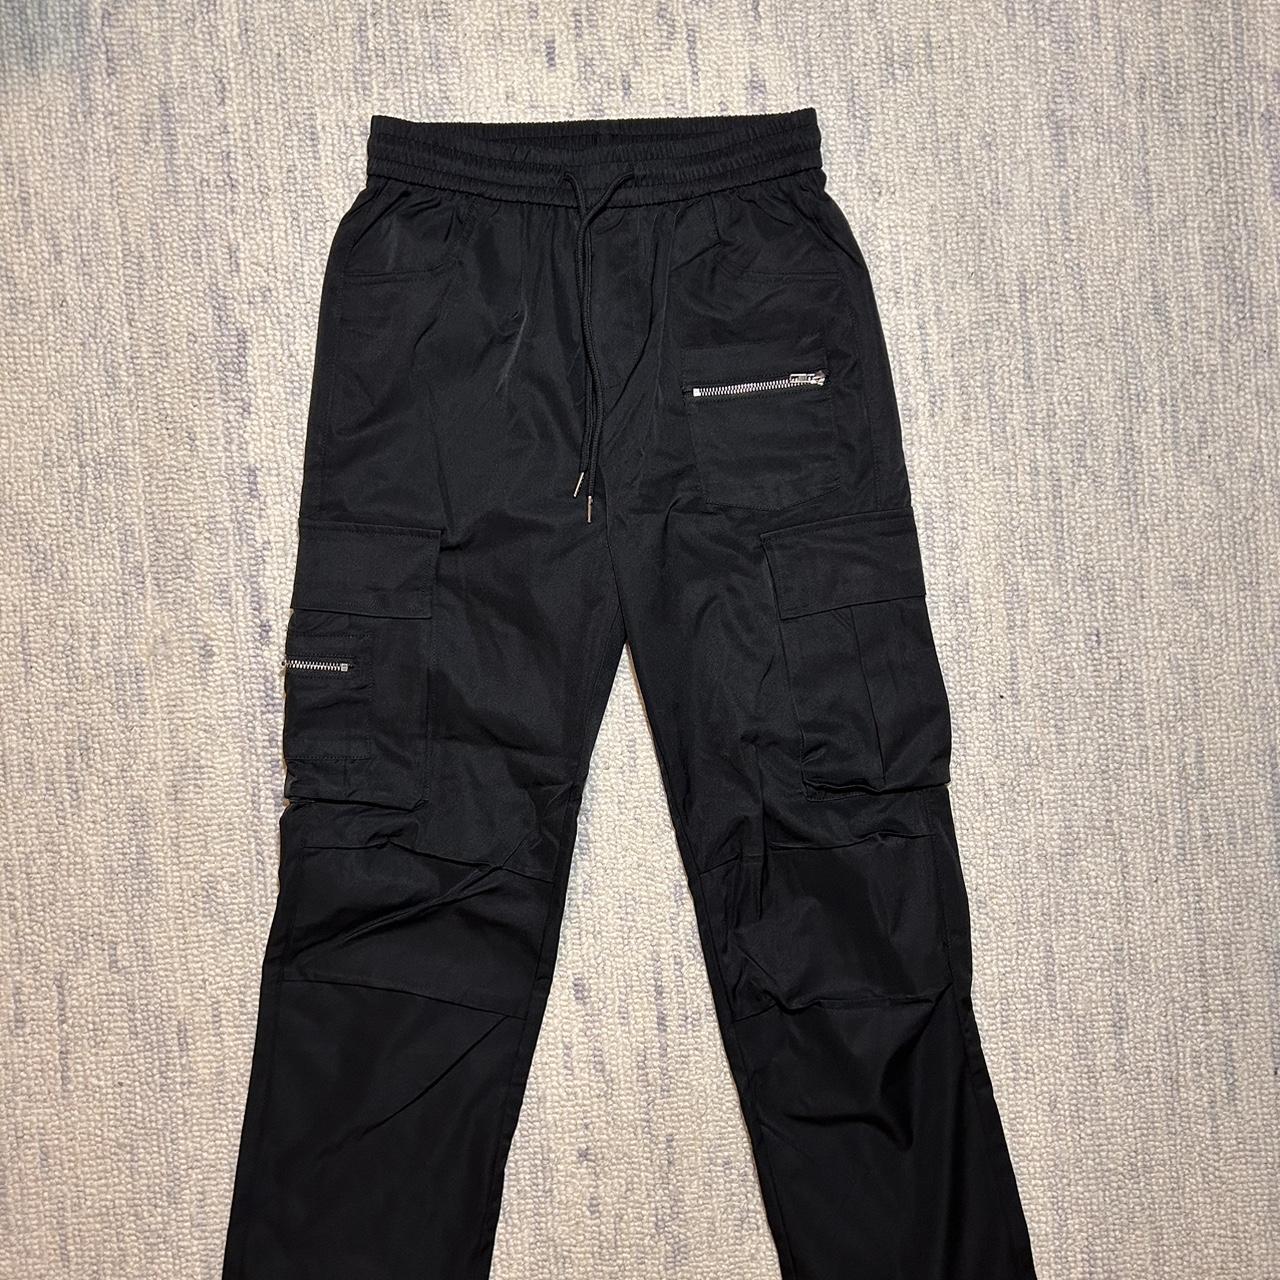 Shien Men’s black cargo pants Size M #streetwear - Depop